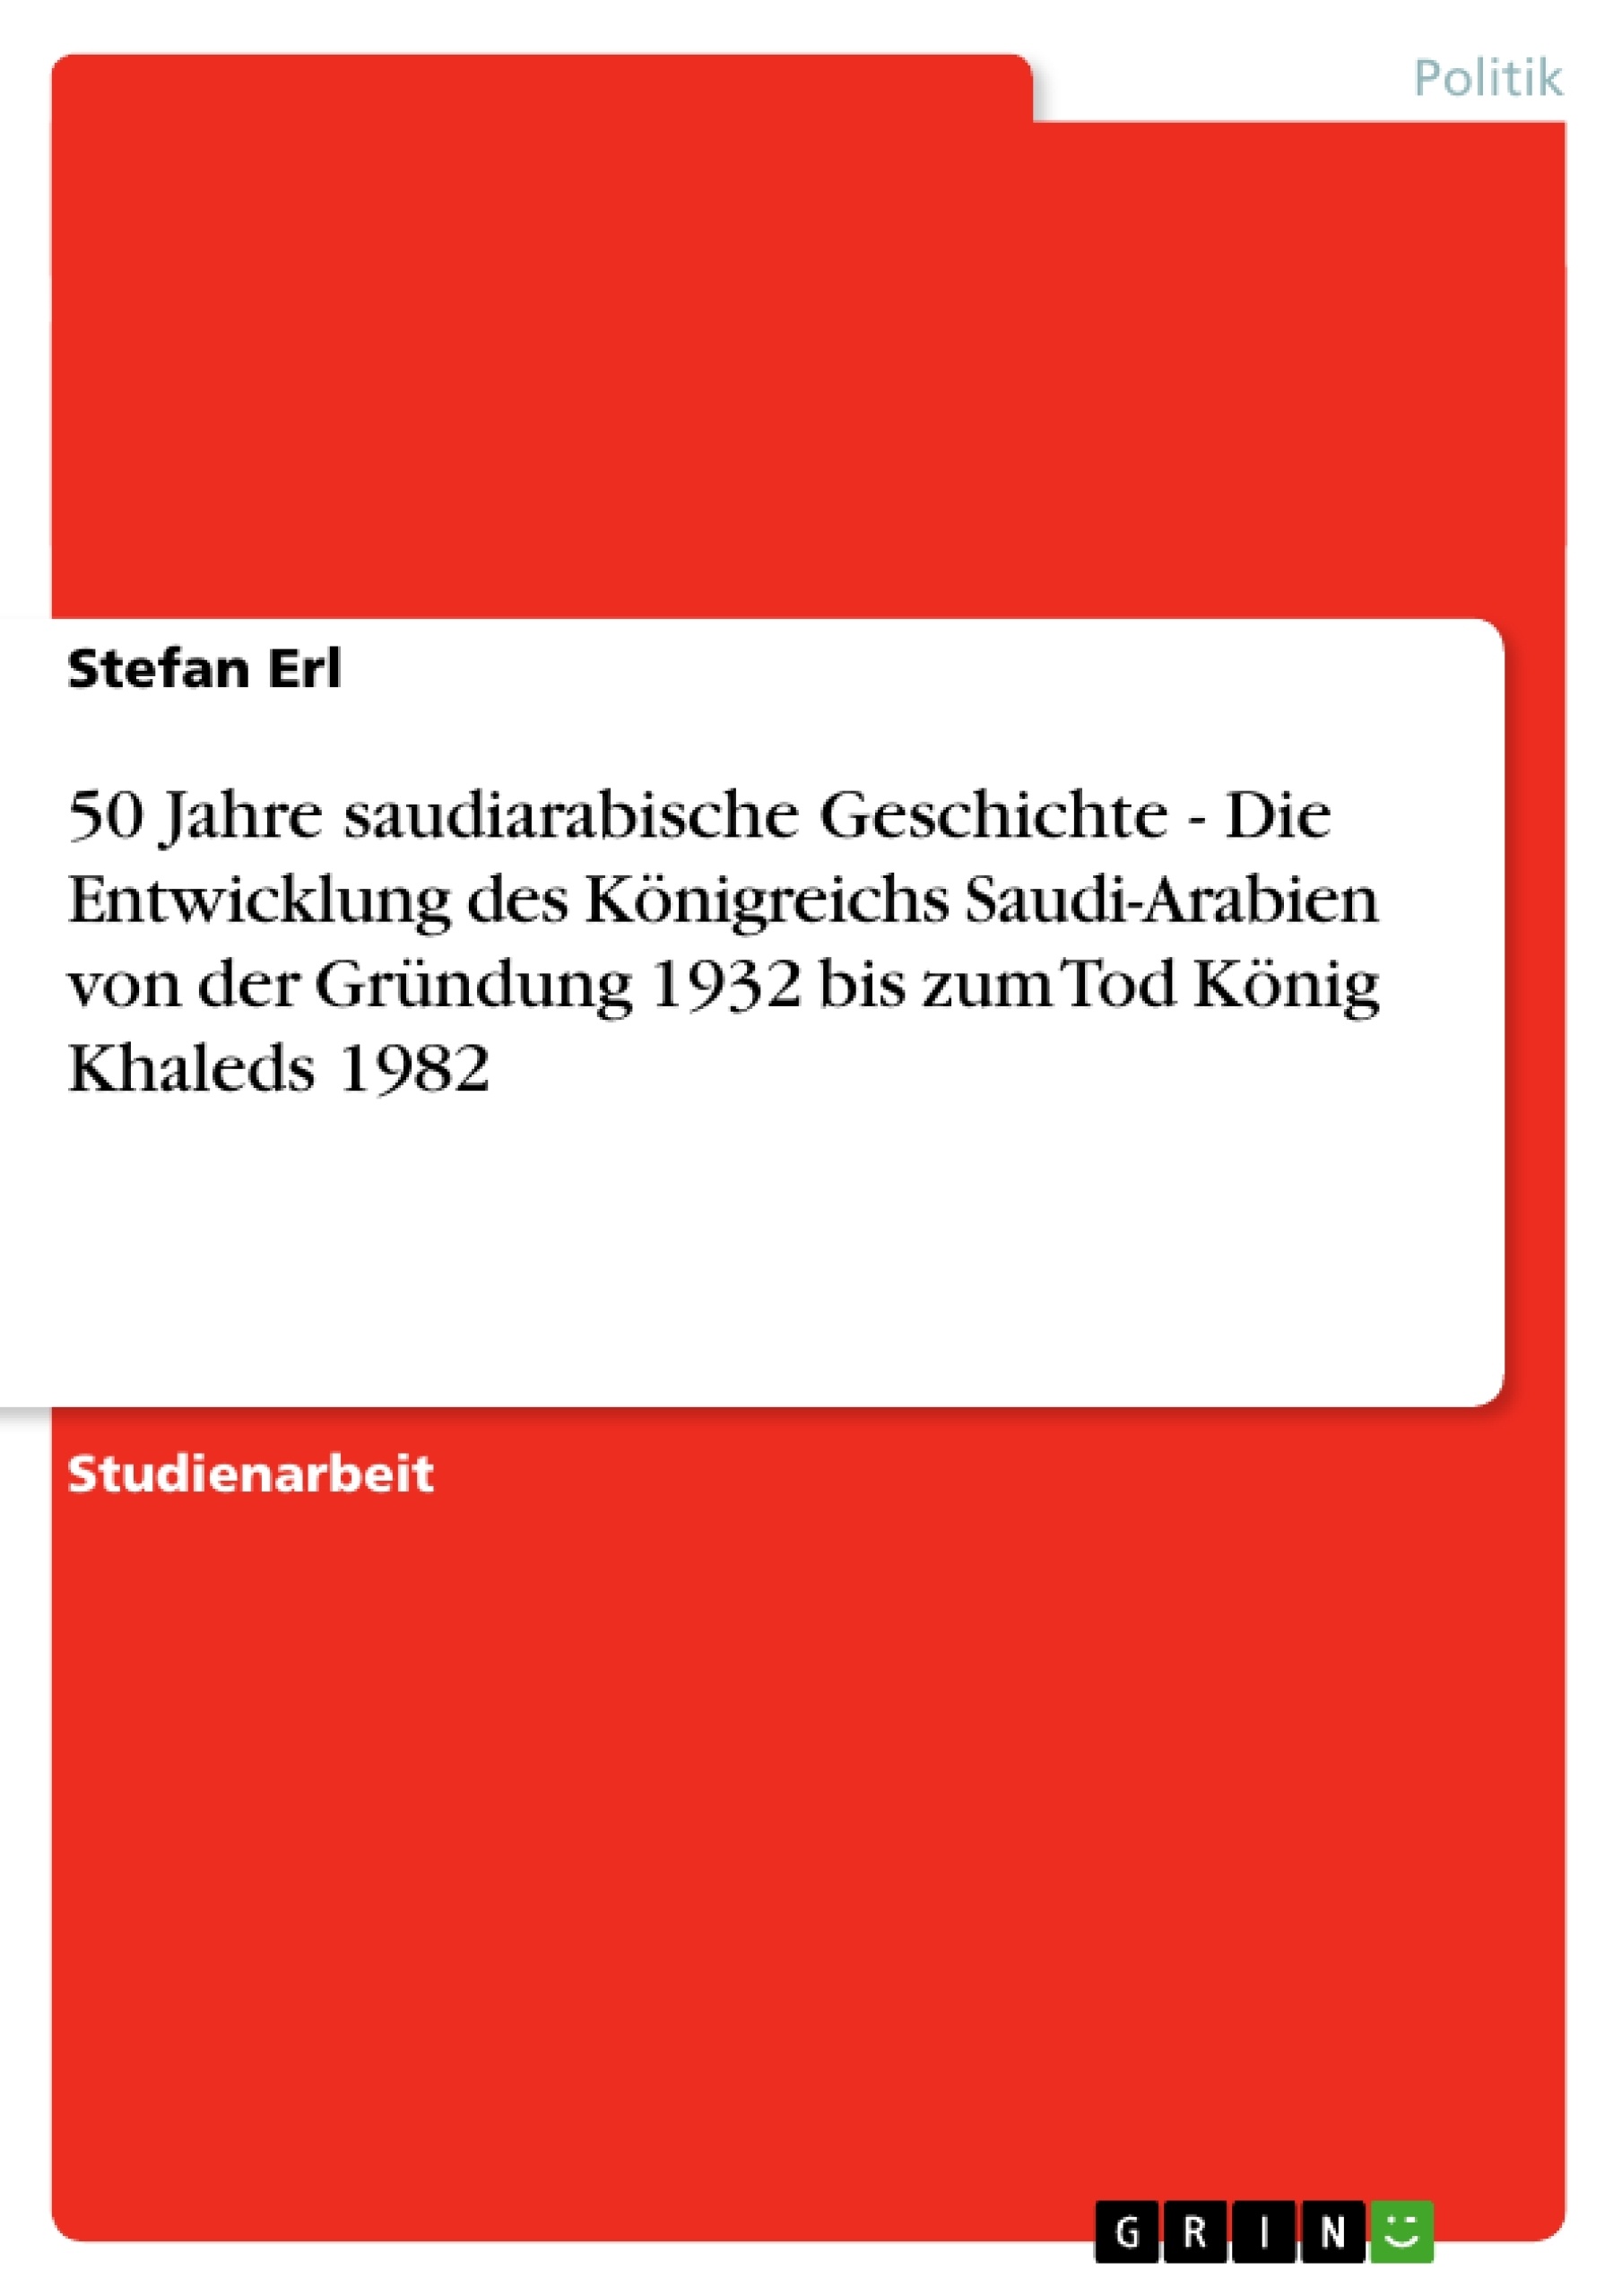 Titel: 50 Jahre saudiarabische Geschichte - Die Entwicklung des Königreichs Saudi-Arabien von der Gründung 1932 bis zum Tod König Khaleds 1982